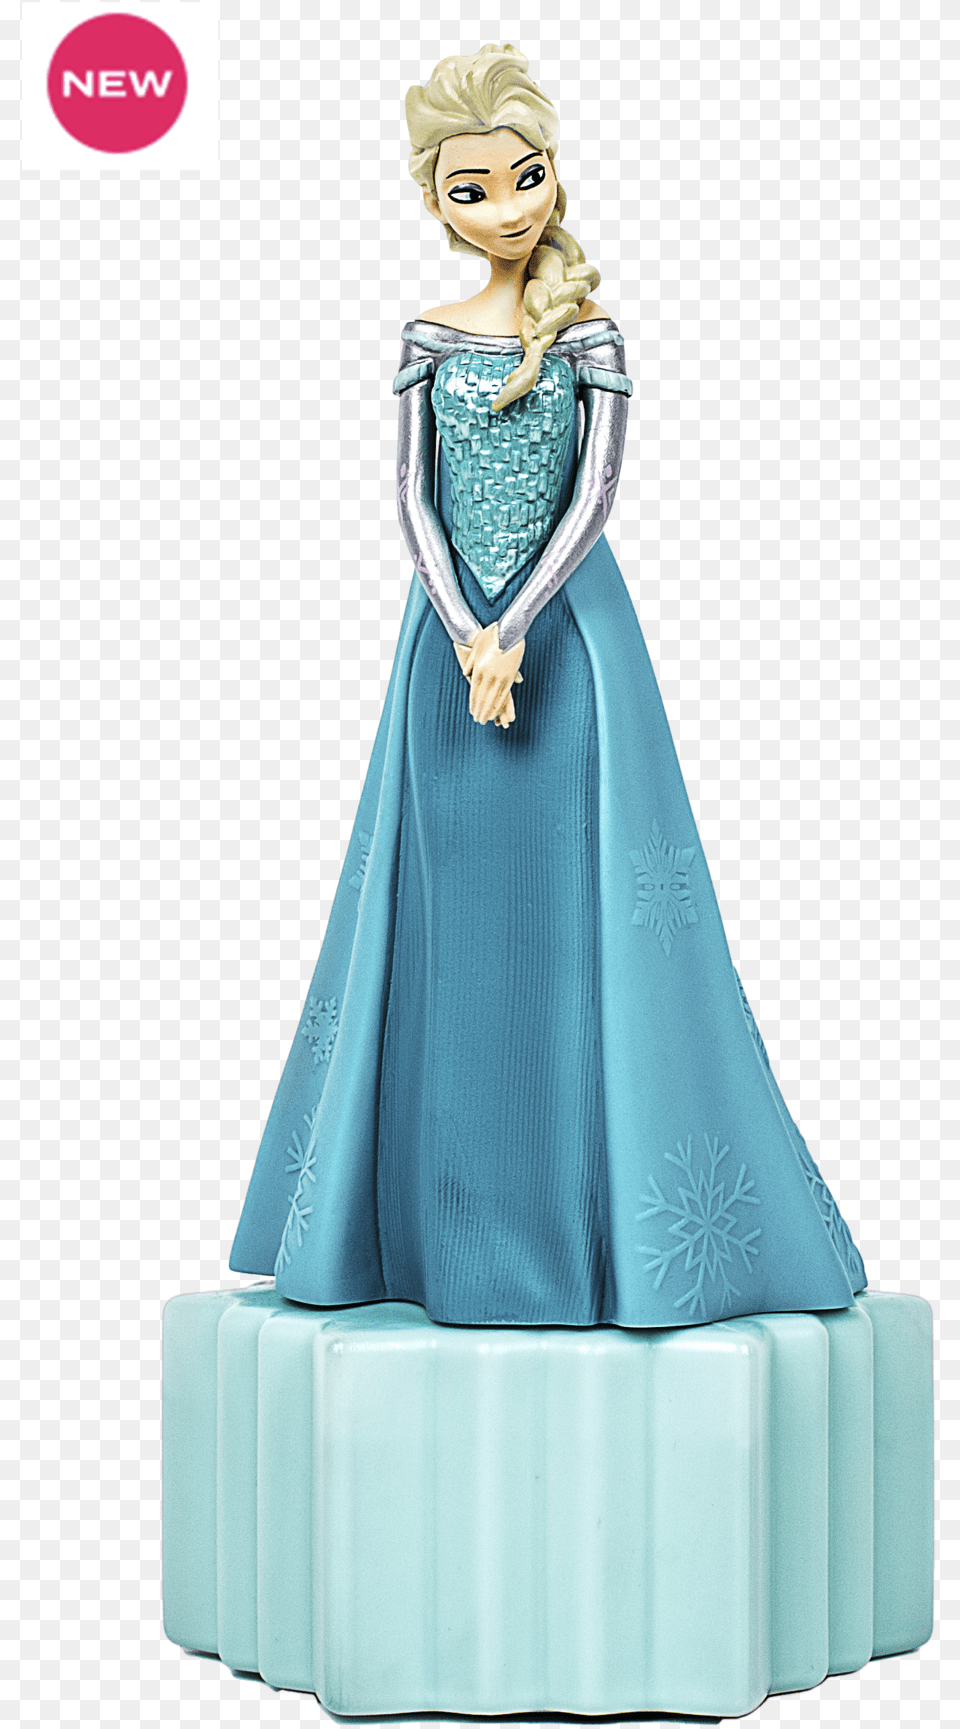 Disney Frozen Elsa Bubble Bath, Figurine, Wedding, Person, Adult Png Image